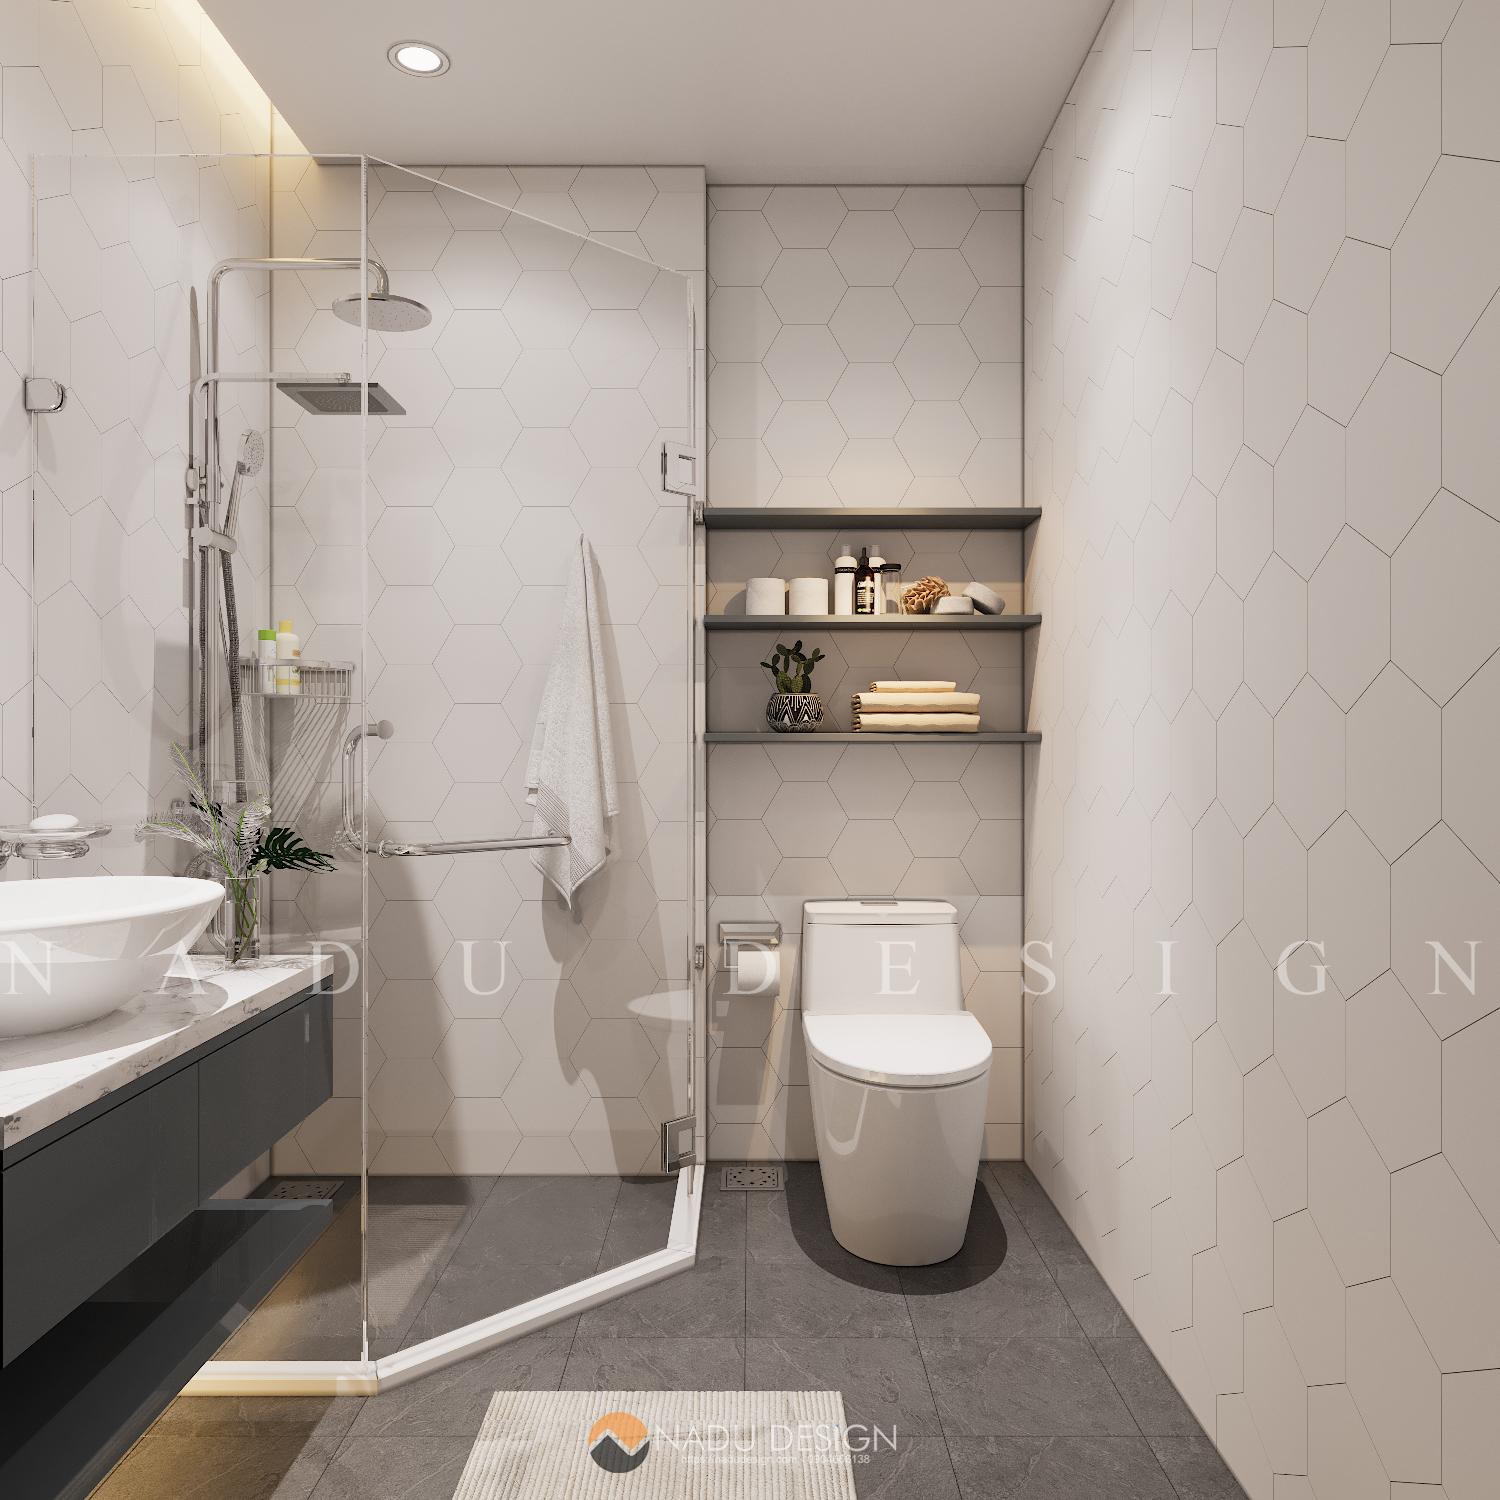 Thiết kế phòng tắm 4m2 sang trọng tiện nghi cho mọi nhà